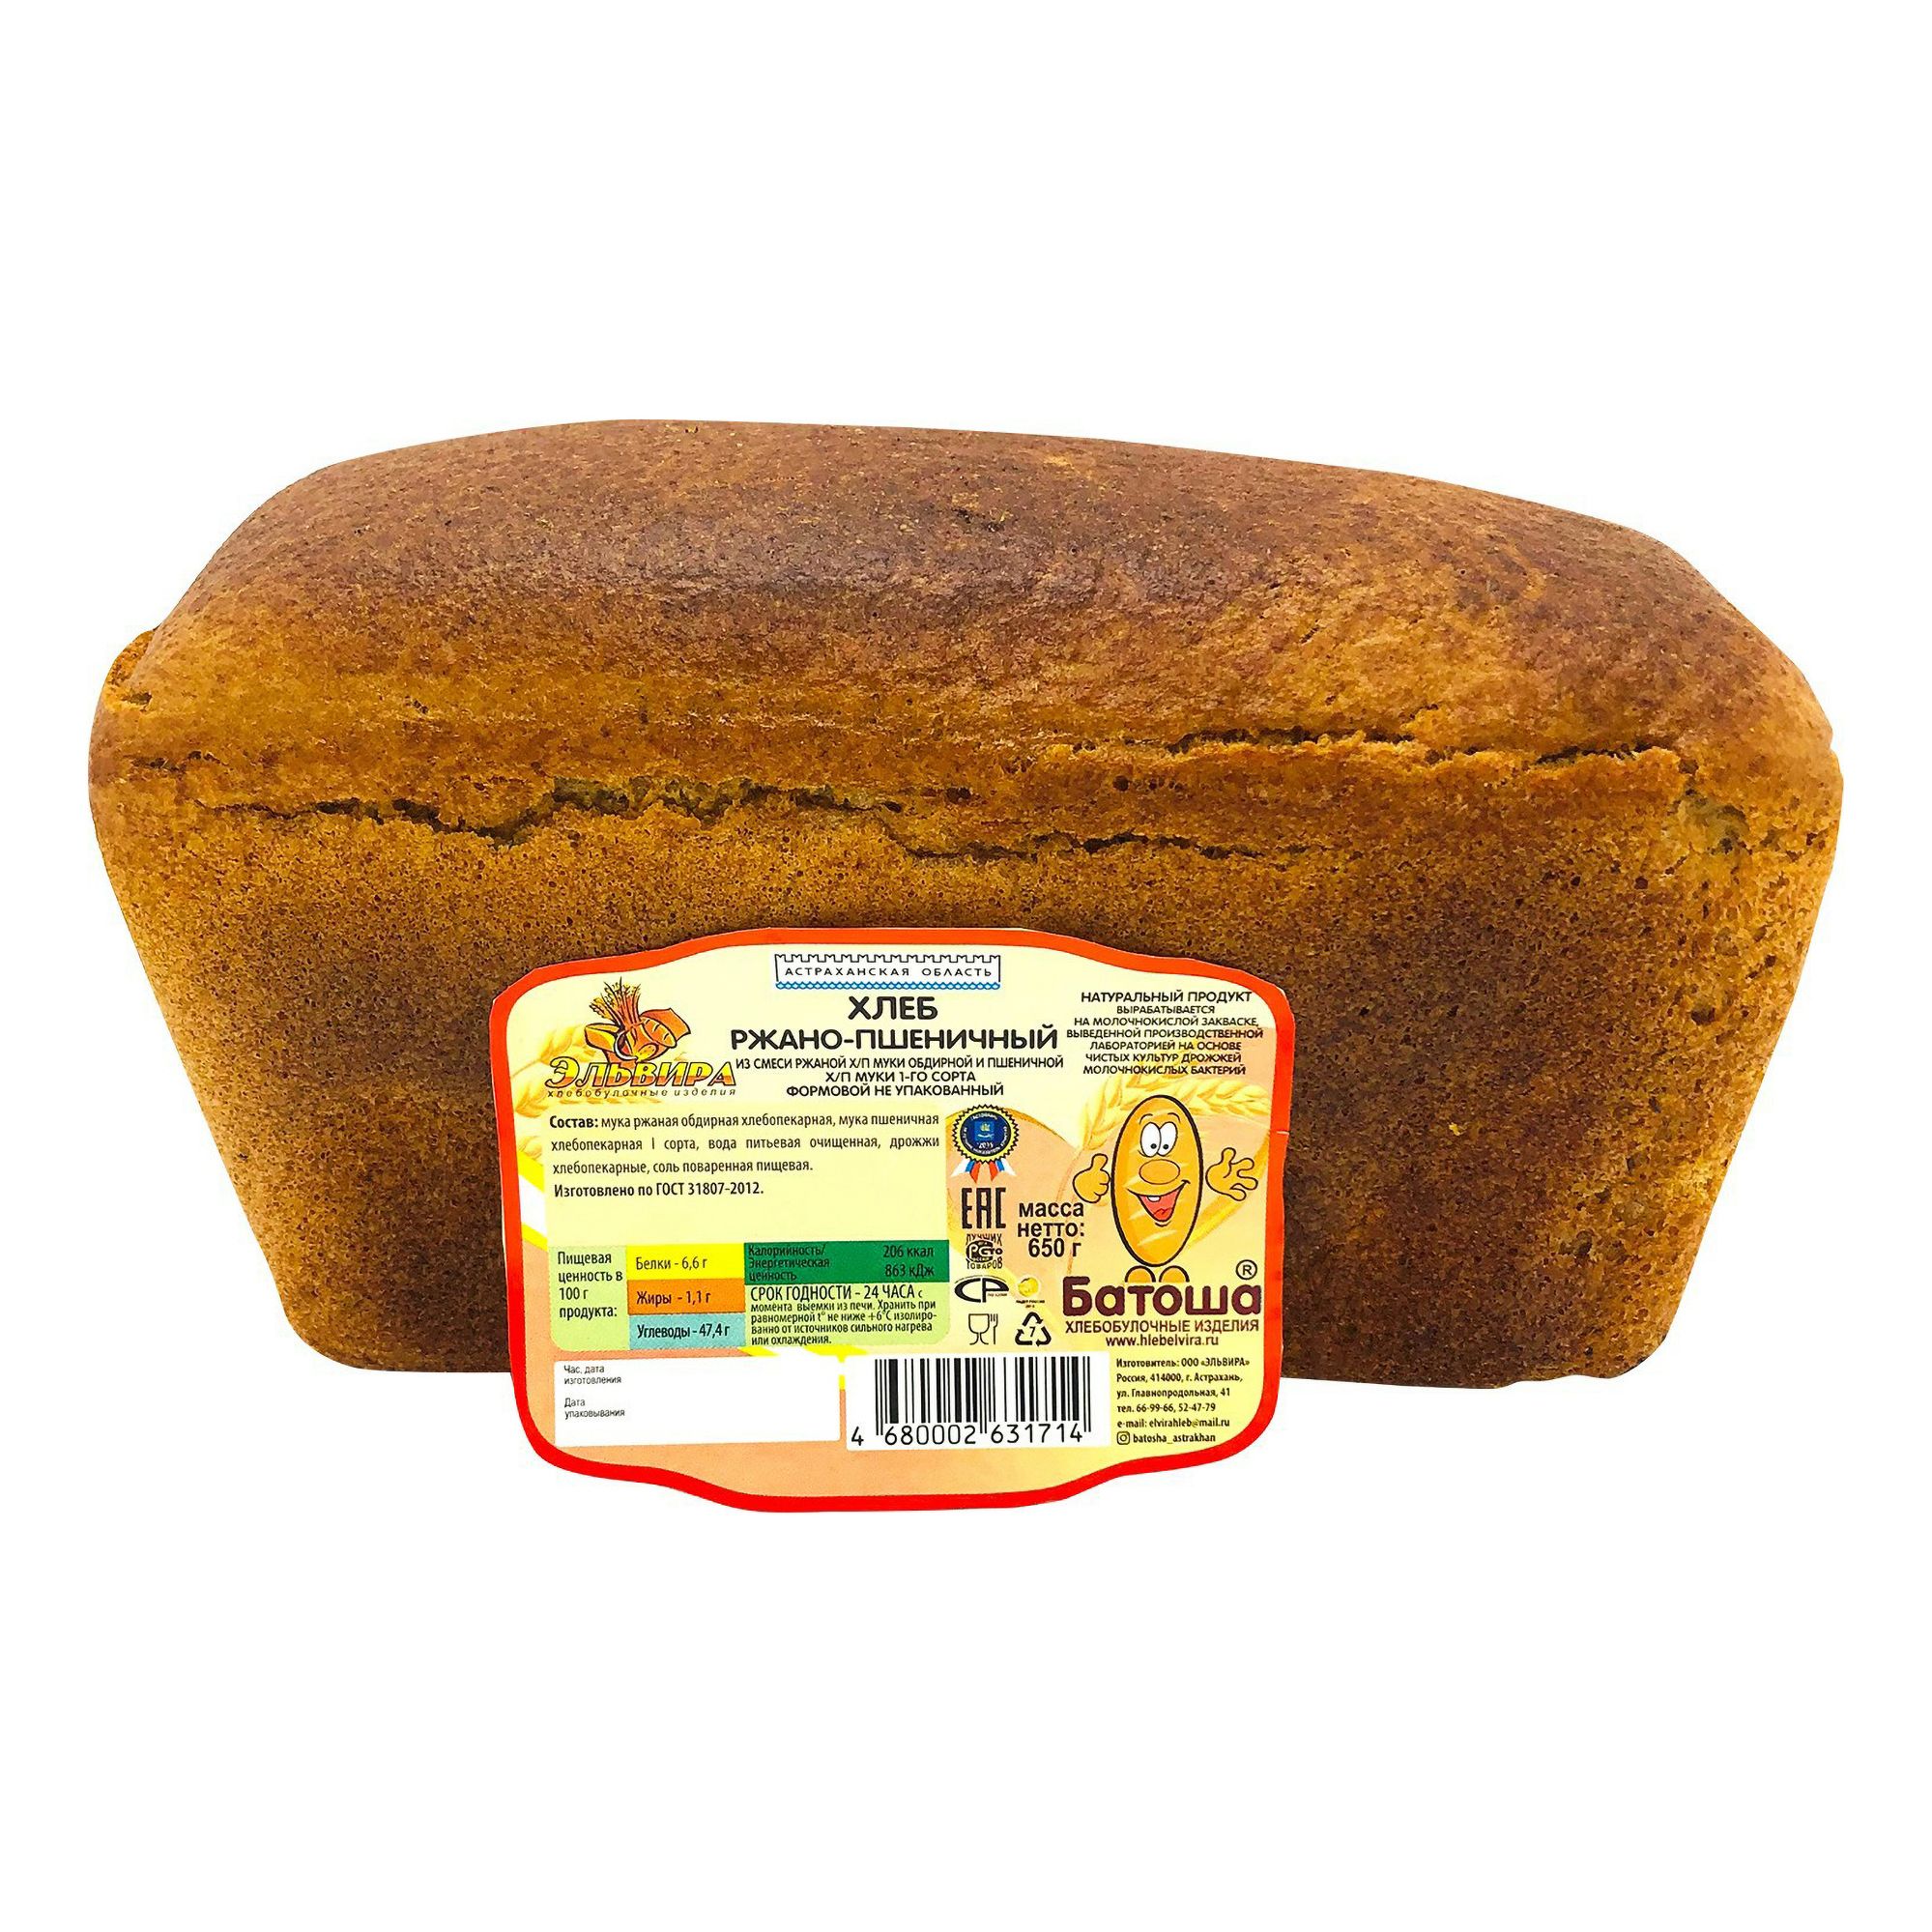 Хлеб ржано-пшеничный 650 г - купить с доставкой на дом в СберМаркет